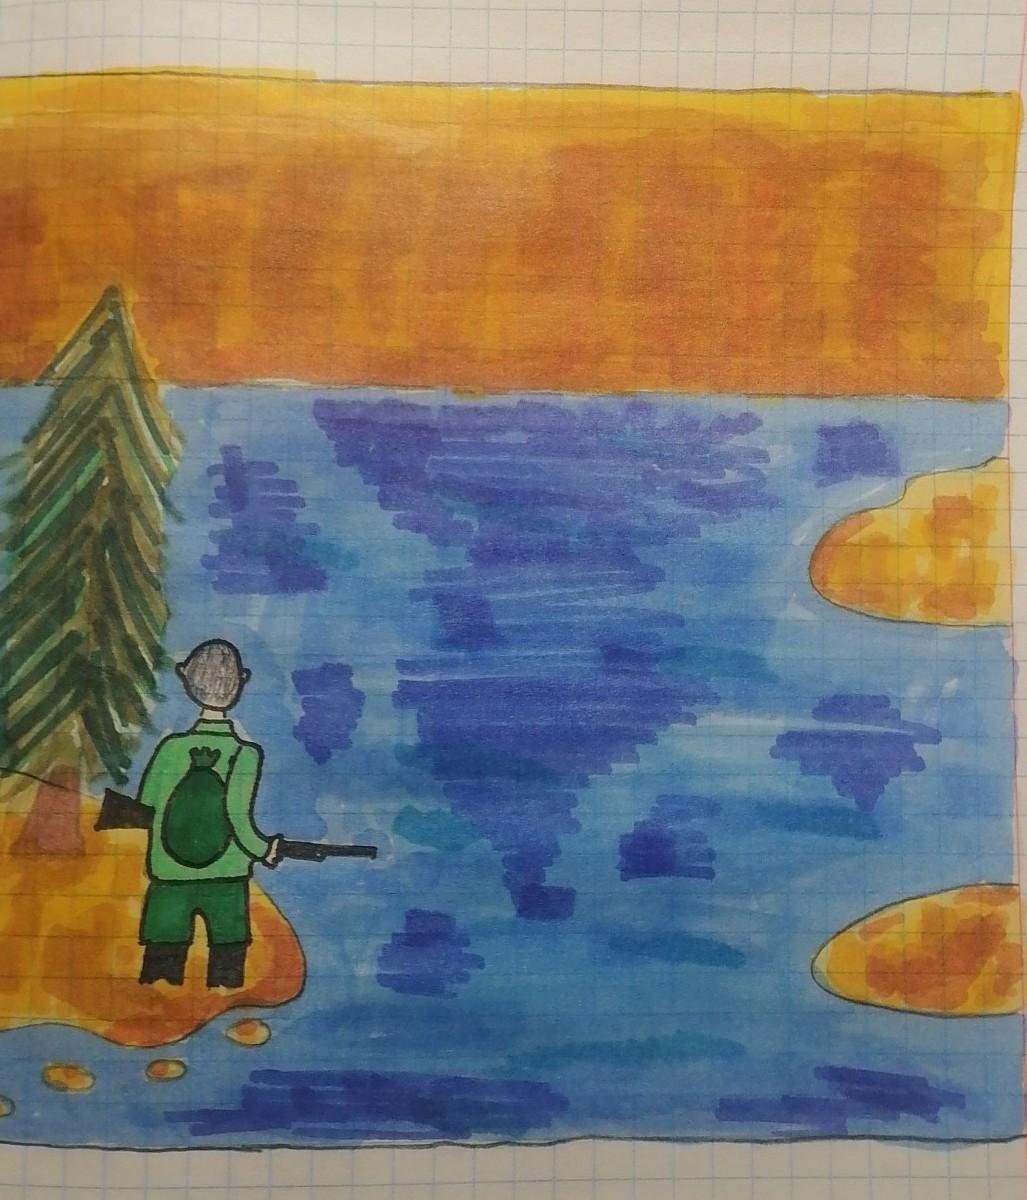 Иллюстрация к рассказу васюткино озеро карандашом. Астафьев Васюткино озеро иллюстрации к рассказу. Рисунок к сказке Васюткино озеро. Рисунок к рассказу Васюткино озеро. Иллюстрация по Васюткино озеро Астафьев.